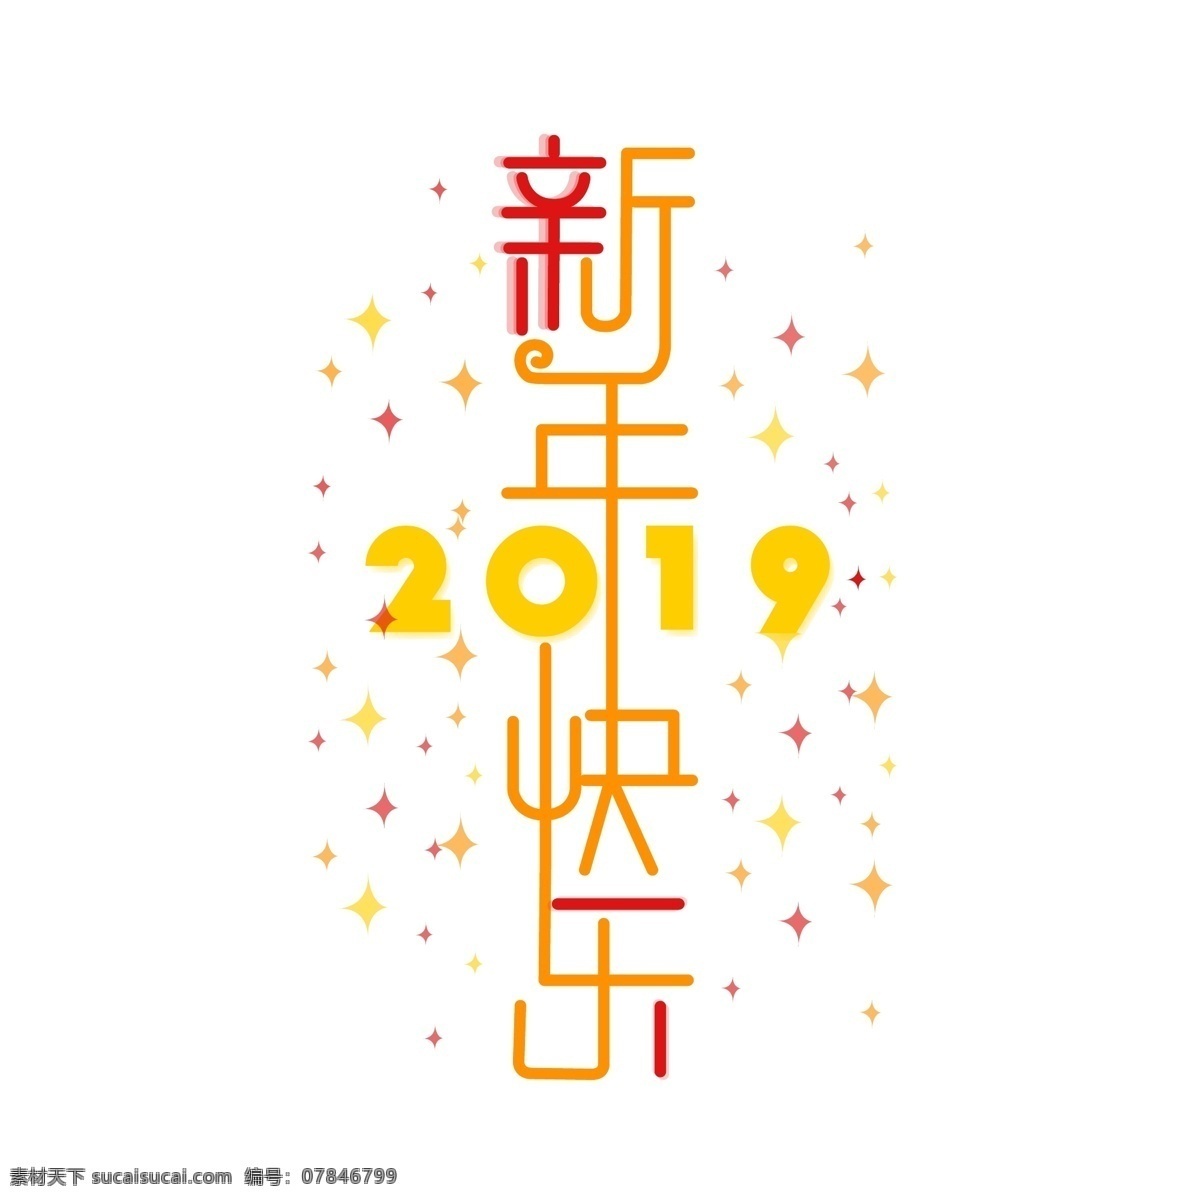 新年 快乐 简约 艺术 字体 新年快乐 字体设计 艺术字体 2019 节日 过年过节